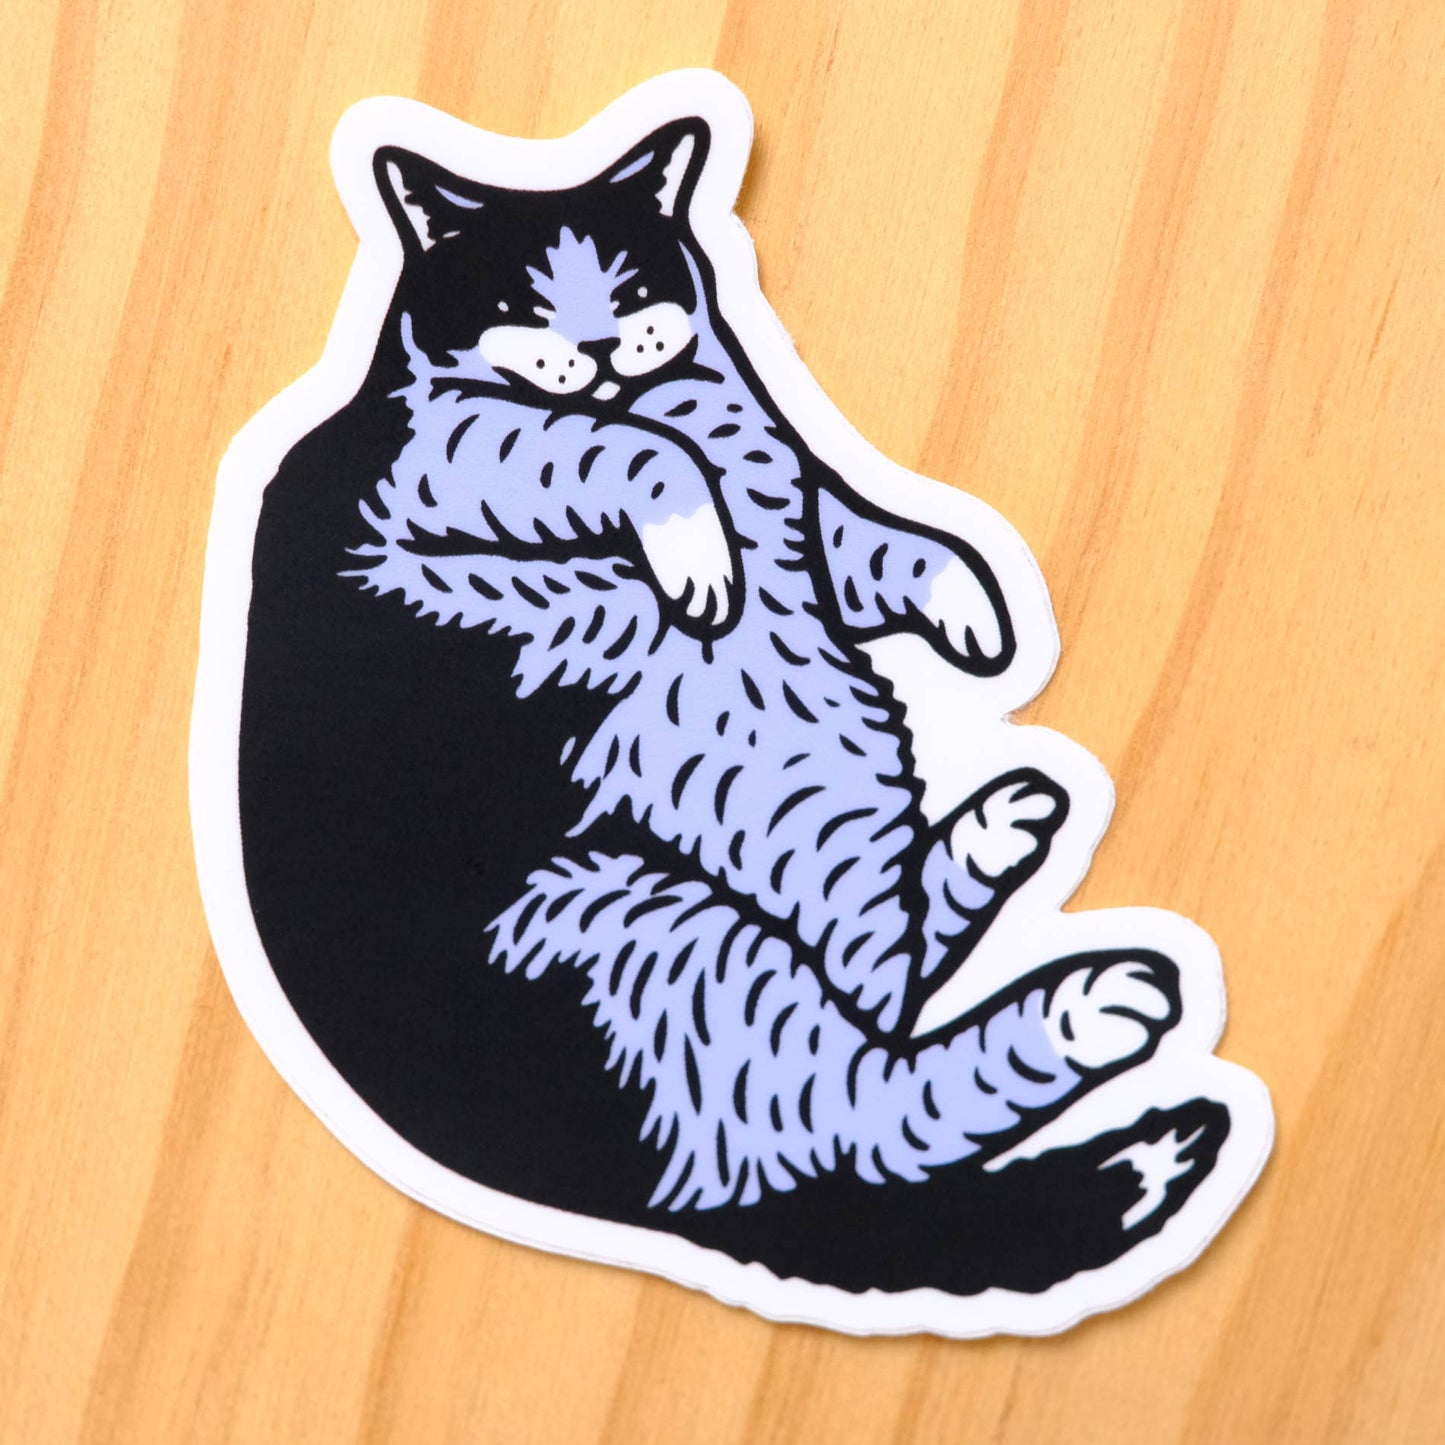 Blue Chonker Cat Sticker